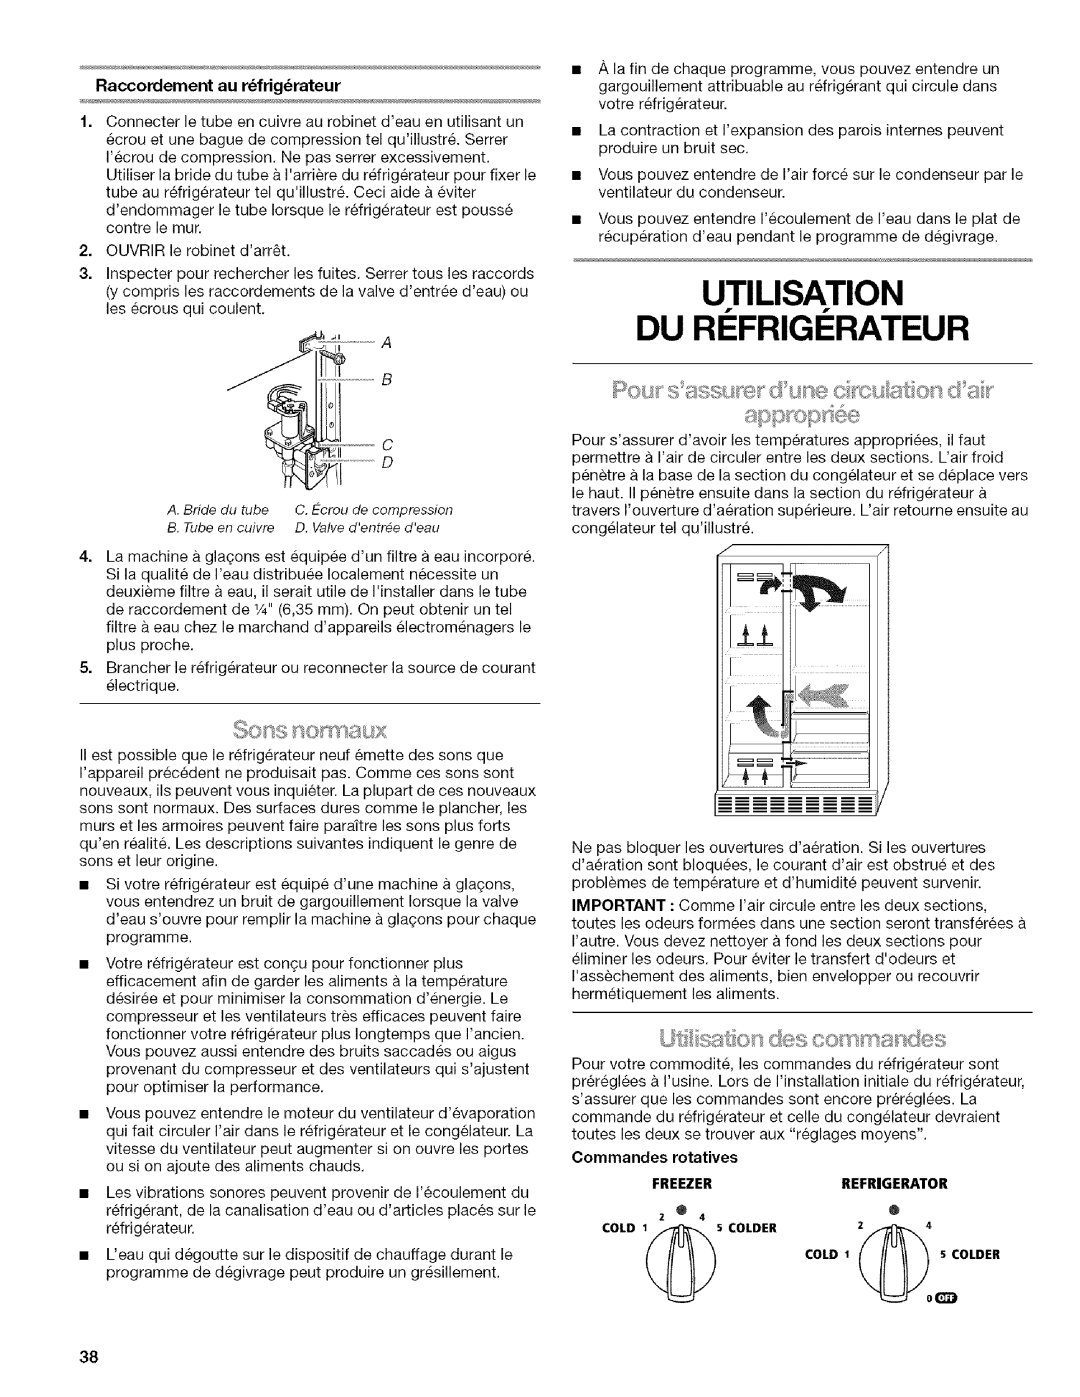 Kenmore w10144349A manual Utilisation Du Ri Frigi Rateur, sst @sdes c x/s nandes, Raccordement au r frig rateur 